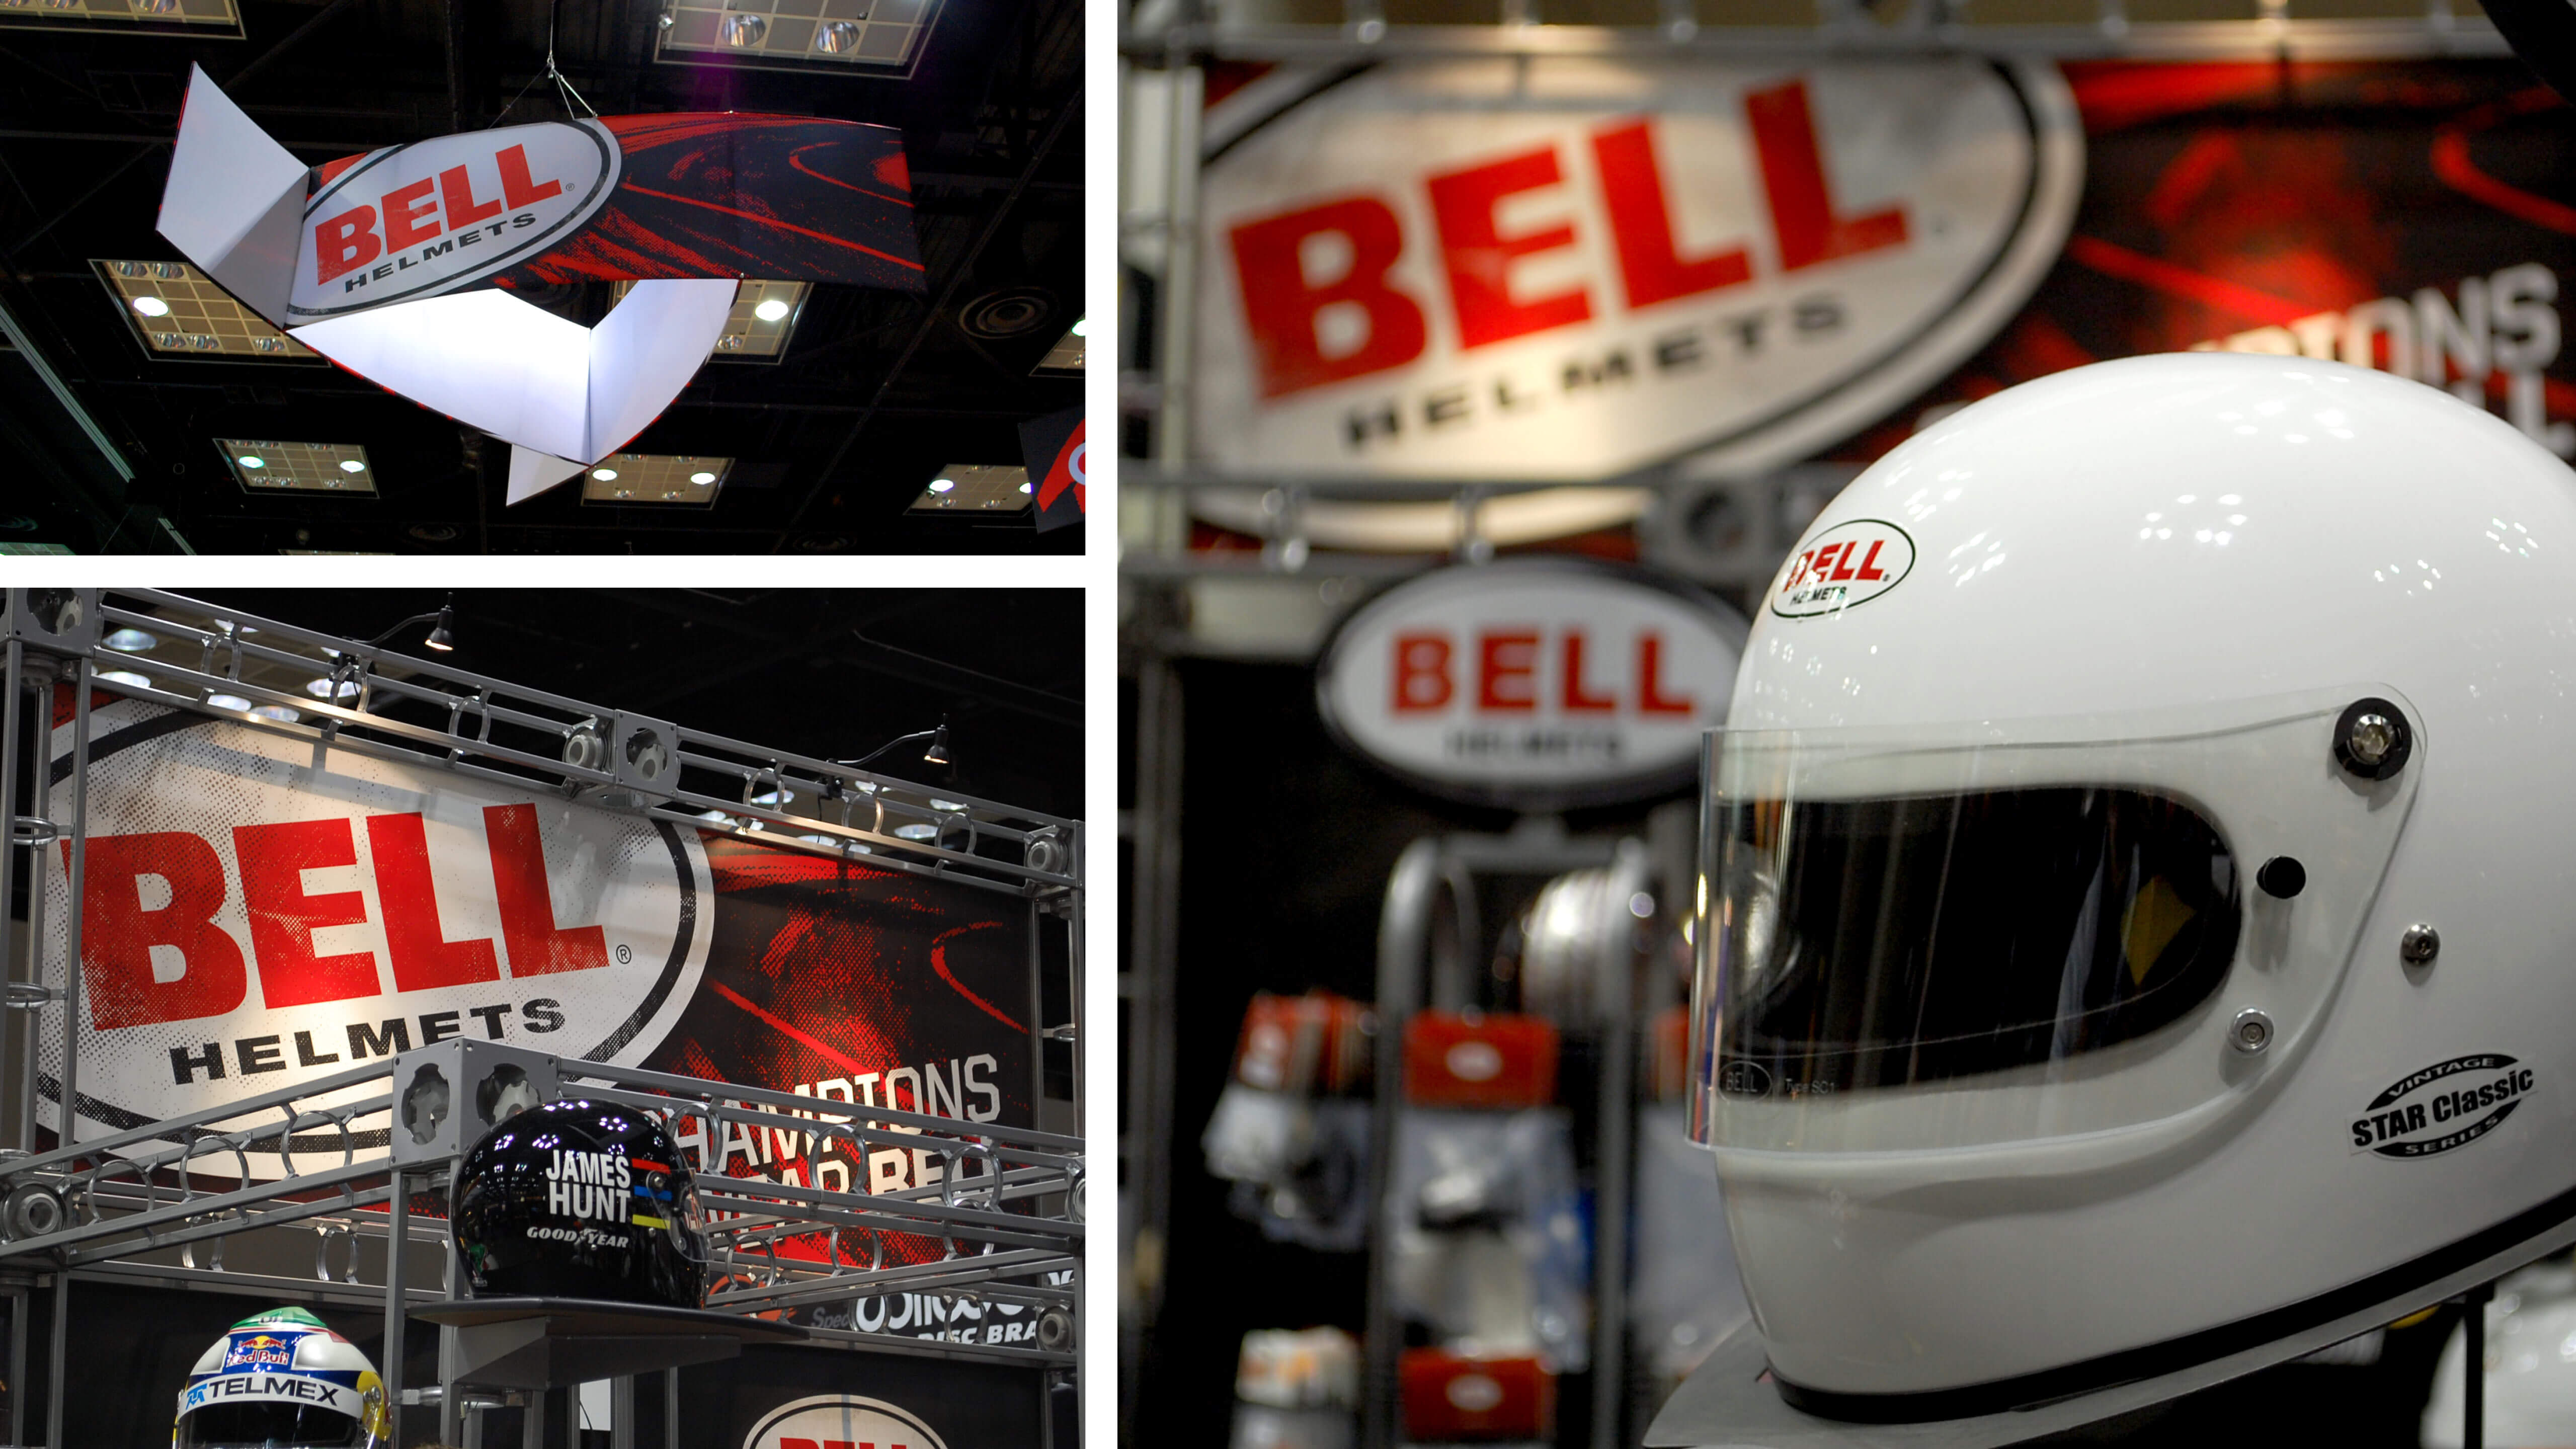 Bell Racing USA - Trade Show Graphics